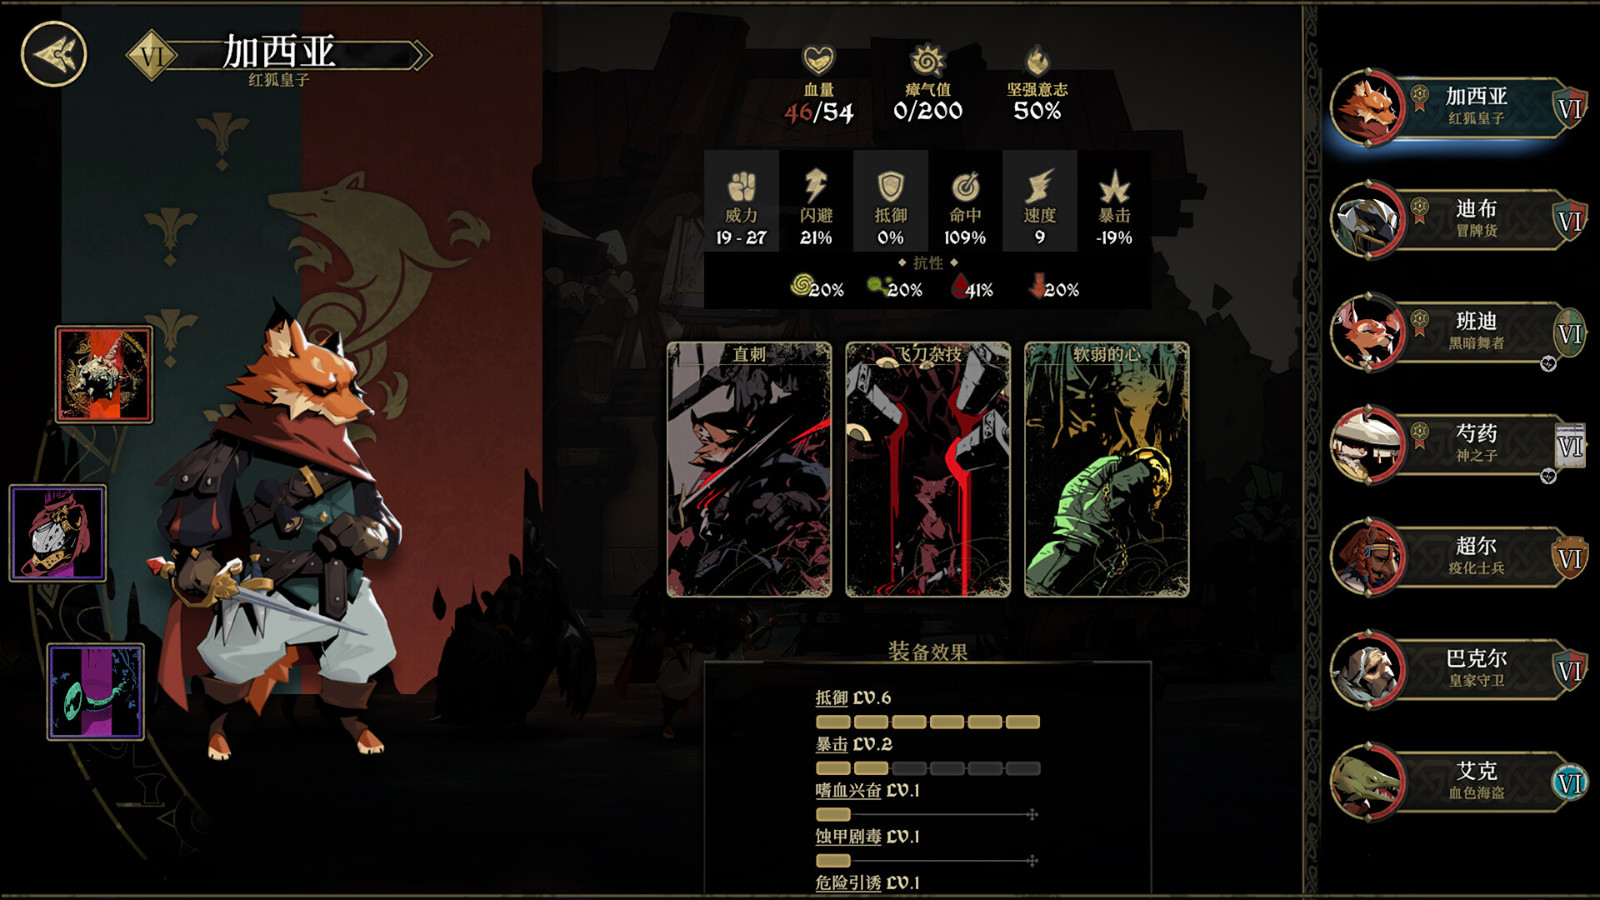 高难度植物拟人RPG游戏《安尼姆的无尽旅途》Steam页面上线 反对于简体中文